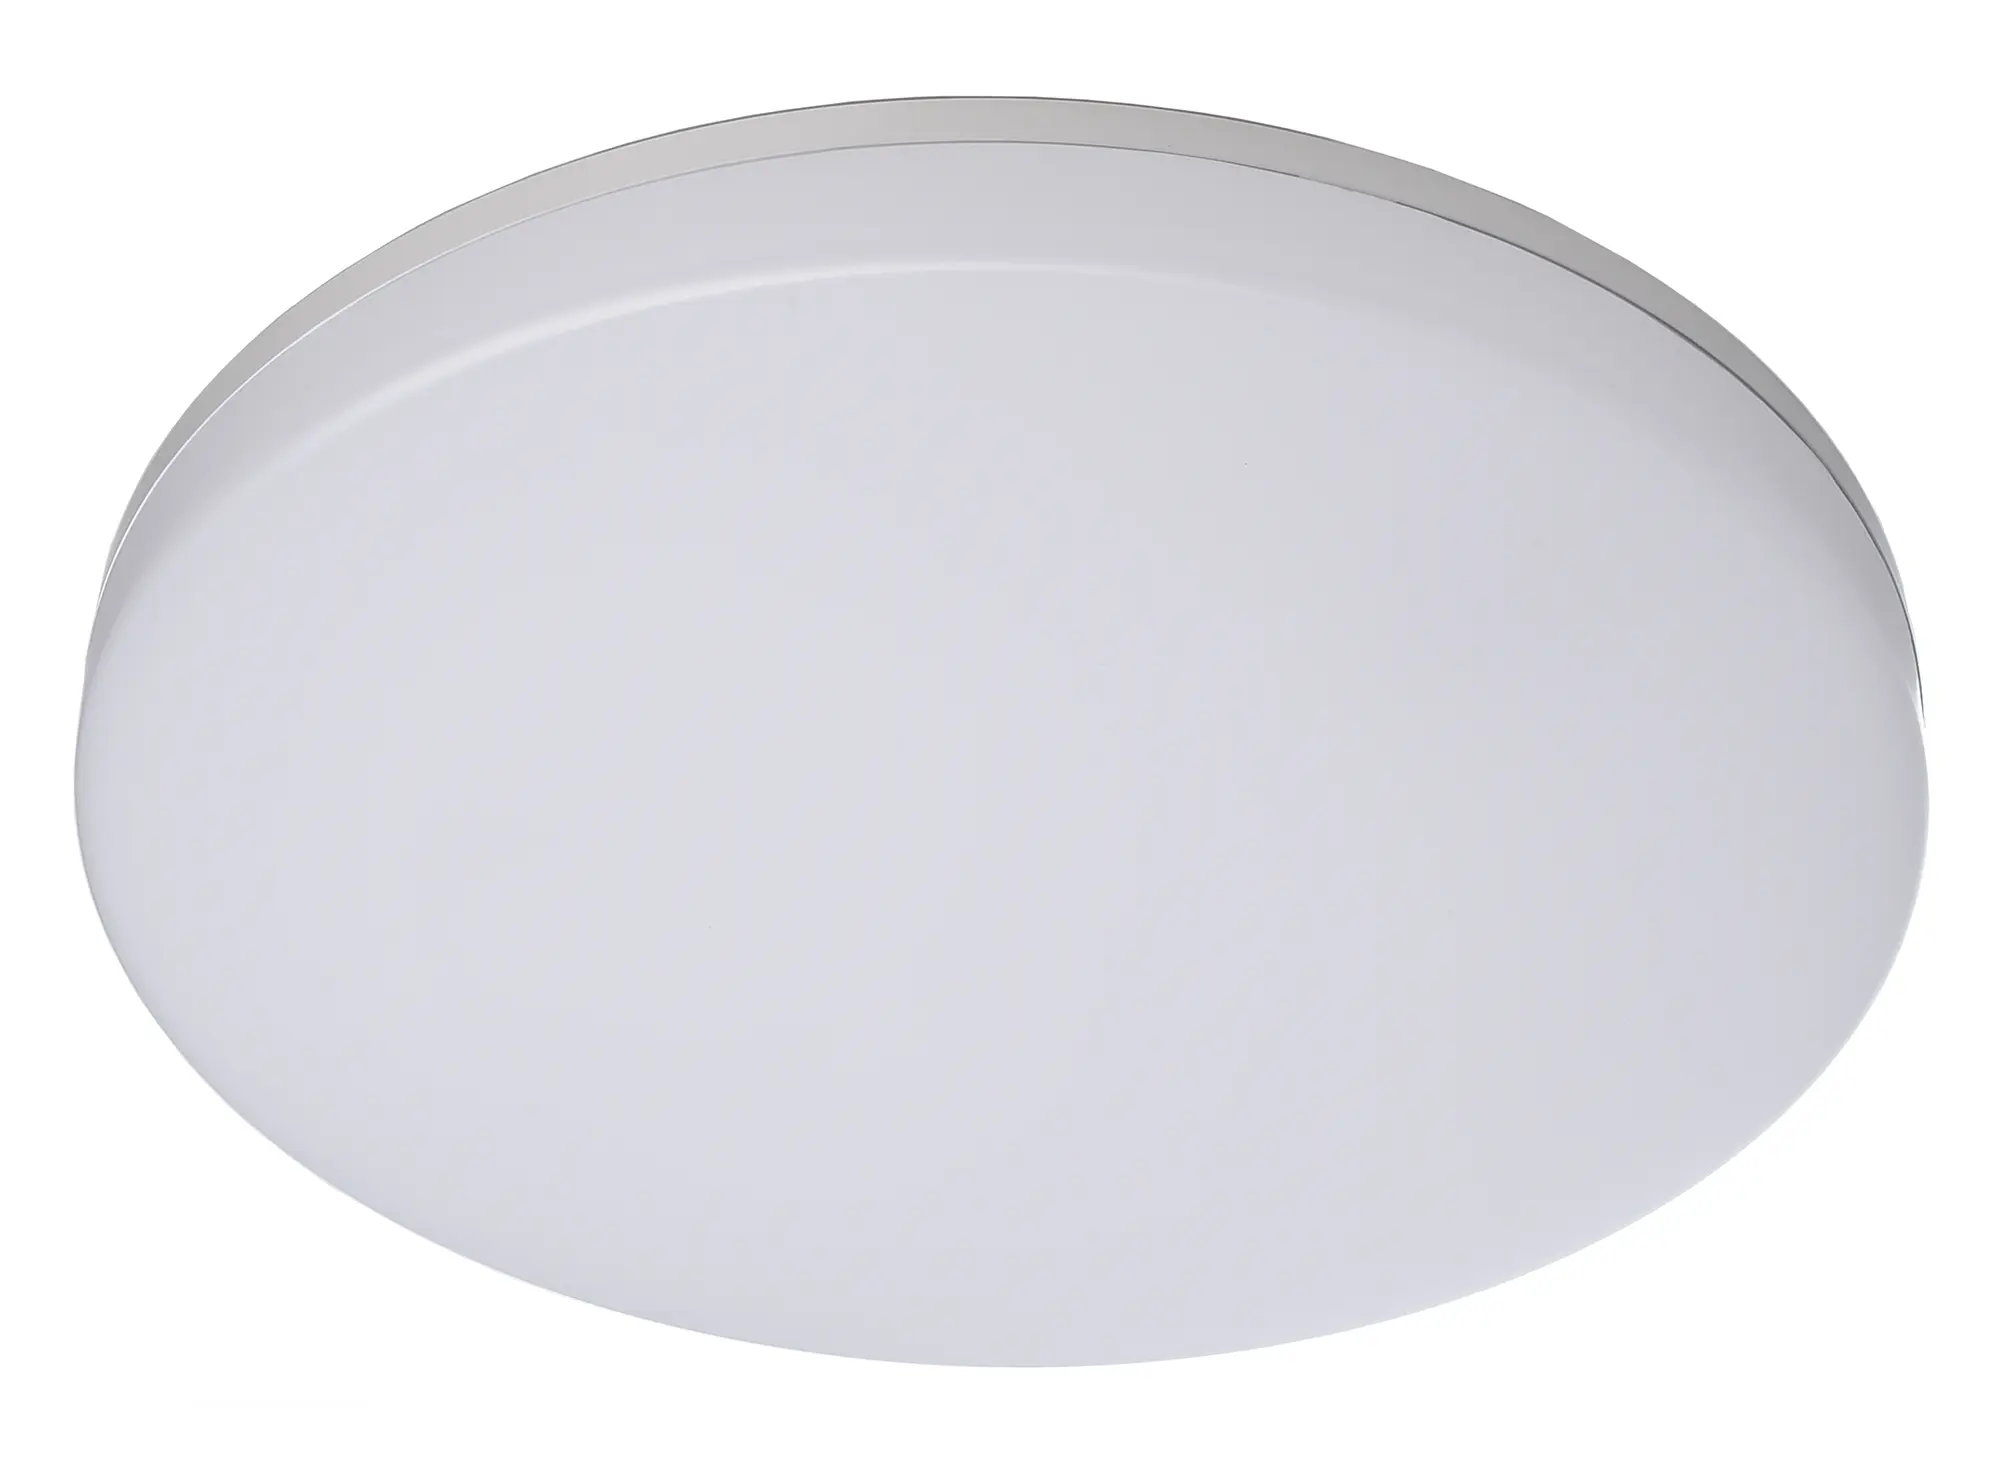 LED-Deckenlampe Altais Deluxe in weiß, Ø 33cm